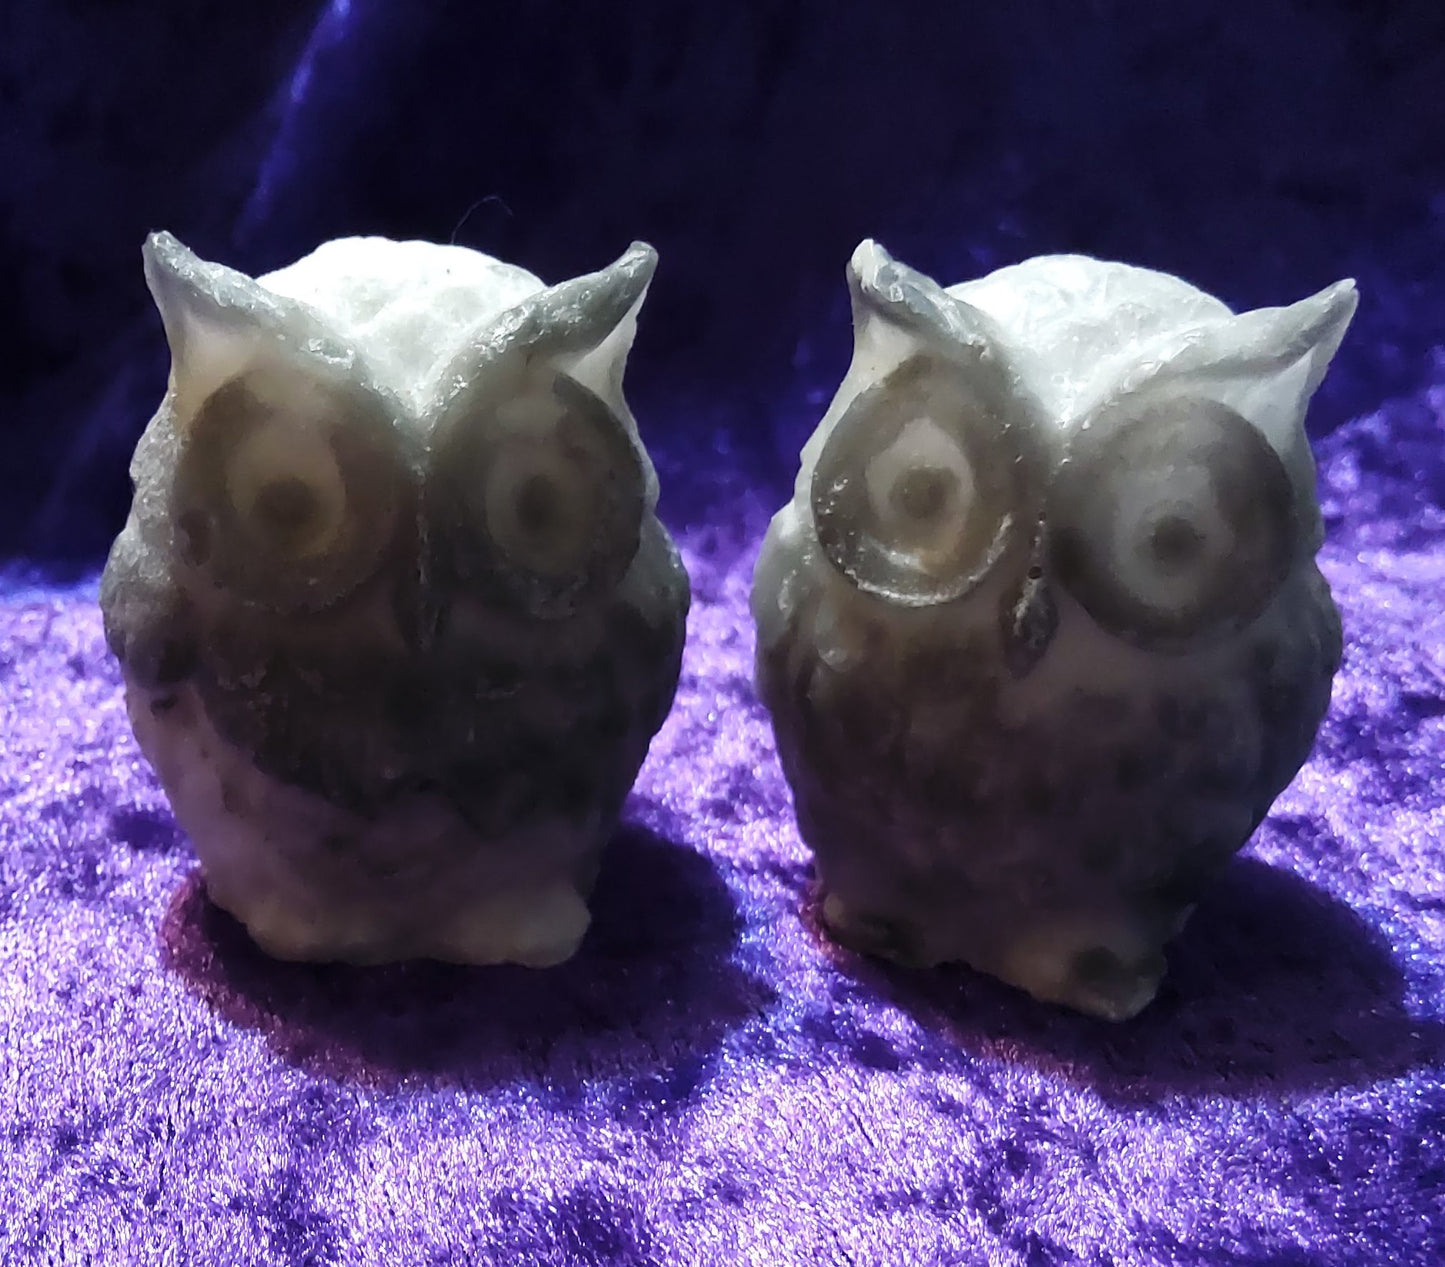 3 little Owls